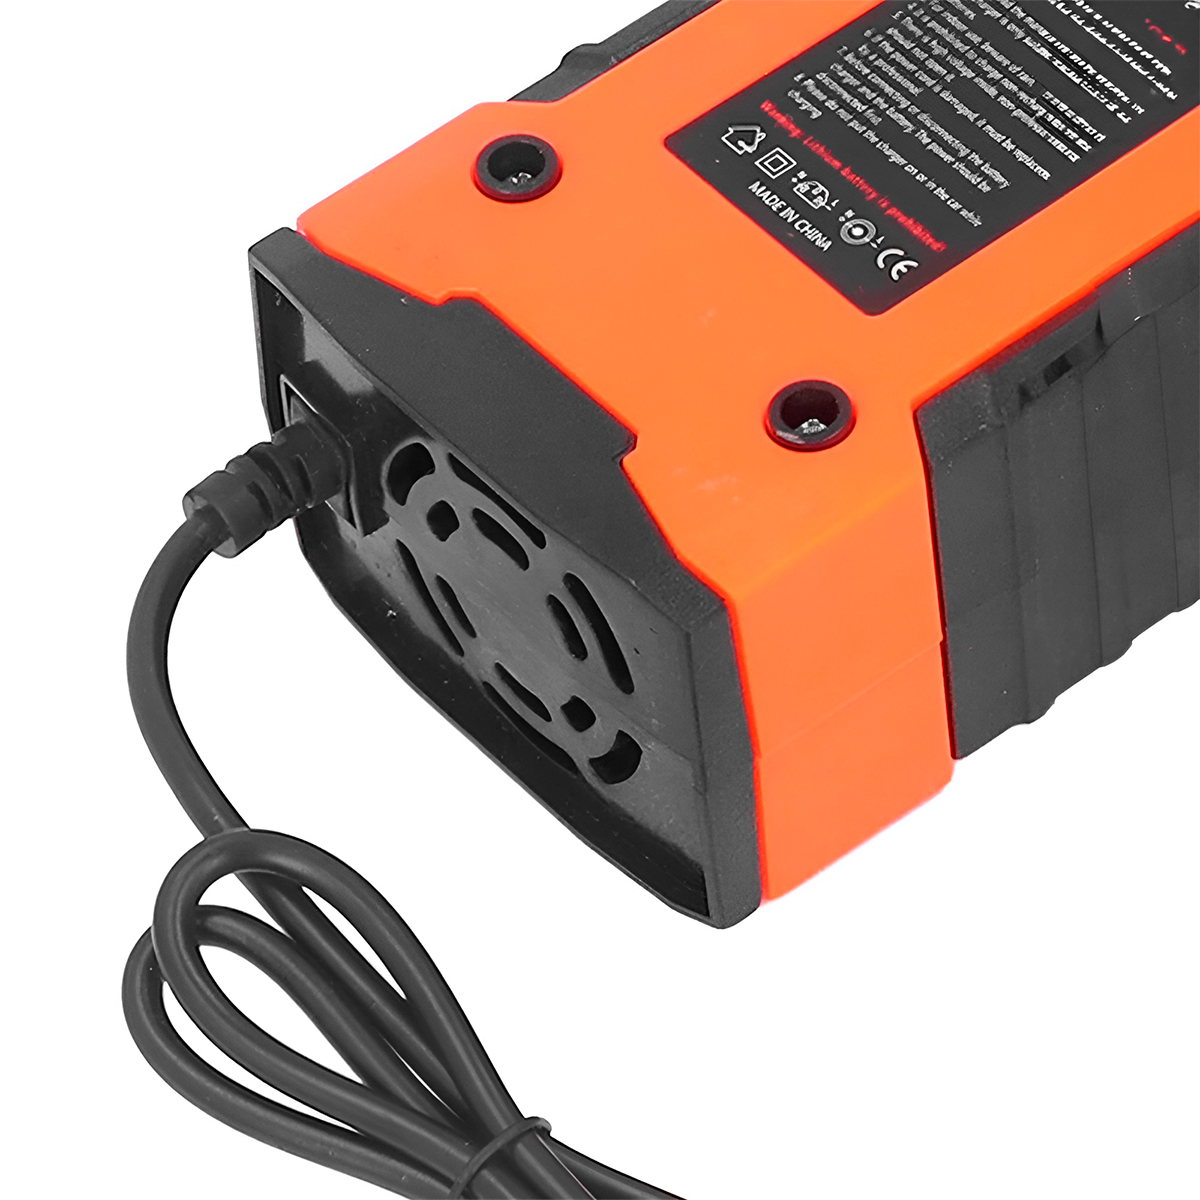 Cargador de batería 12V 2A Coche Moto Cargador de batería Pantalla LED (UE)  Ndcxsfigh Accesorios para autos y motos